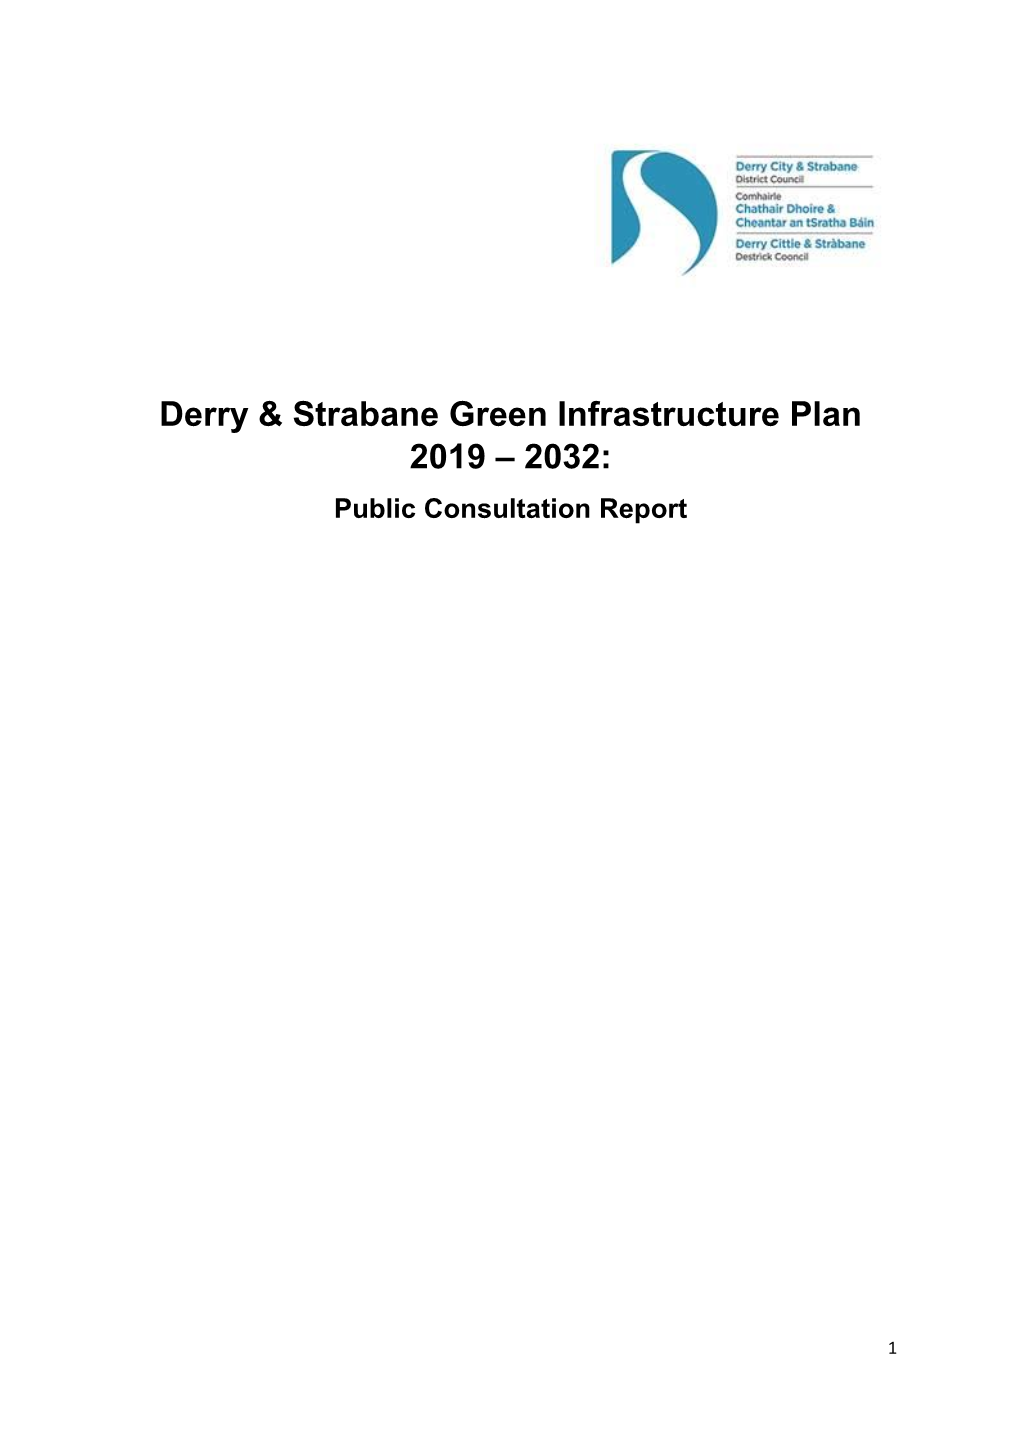 Derry & Strabane Green Infrastructure Plan 2019